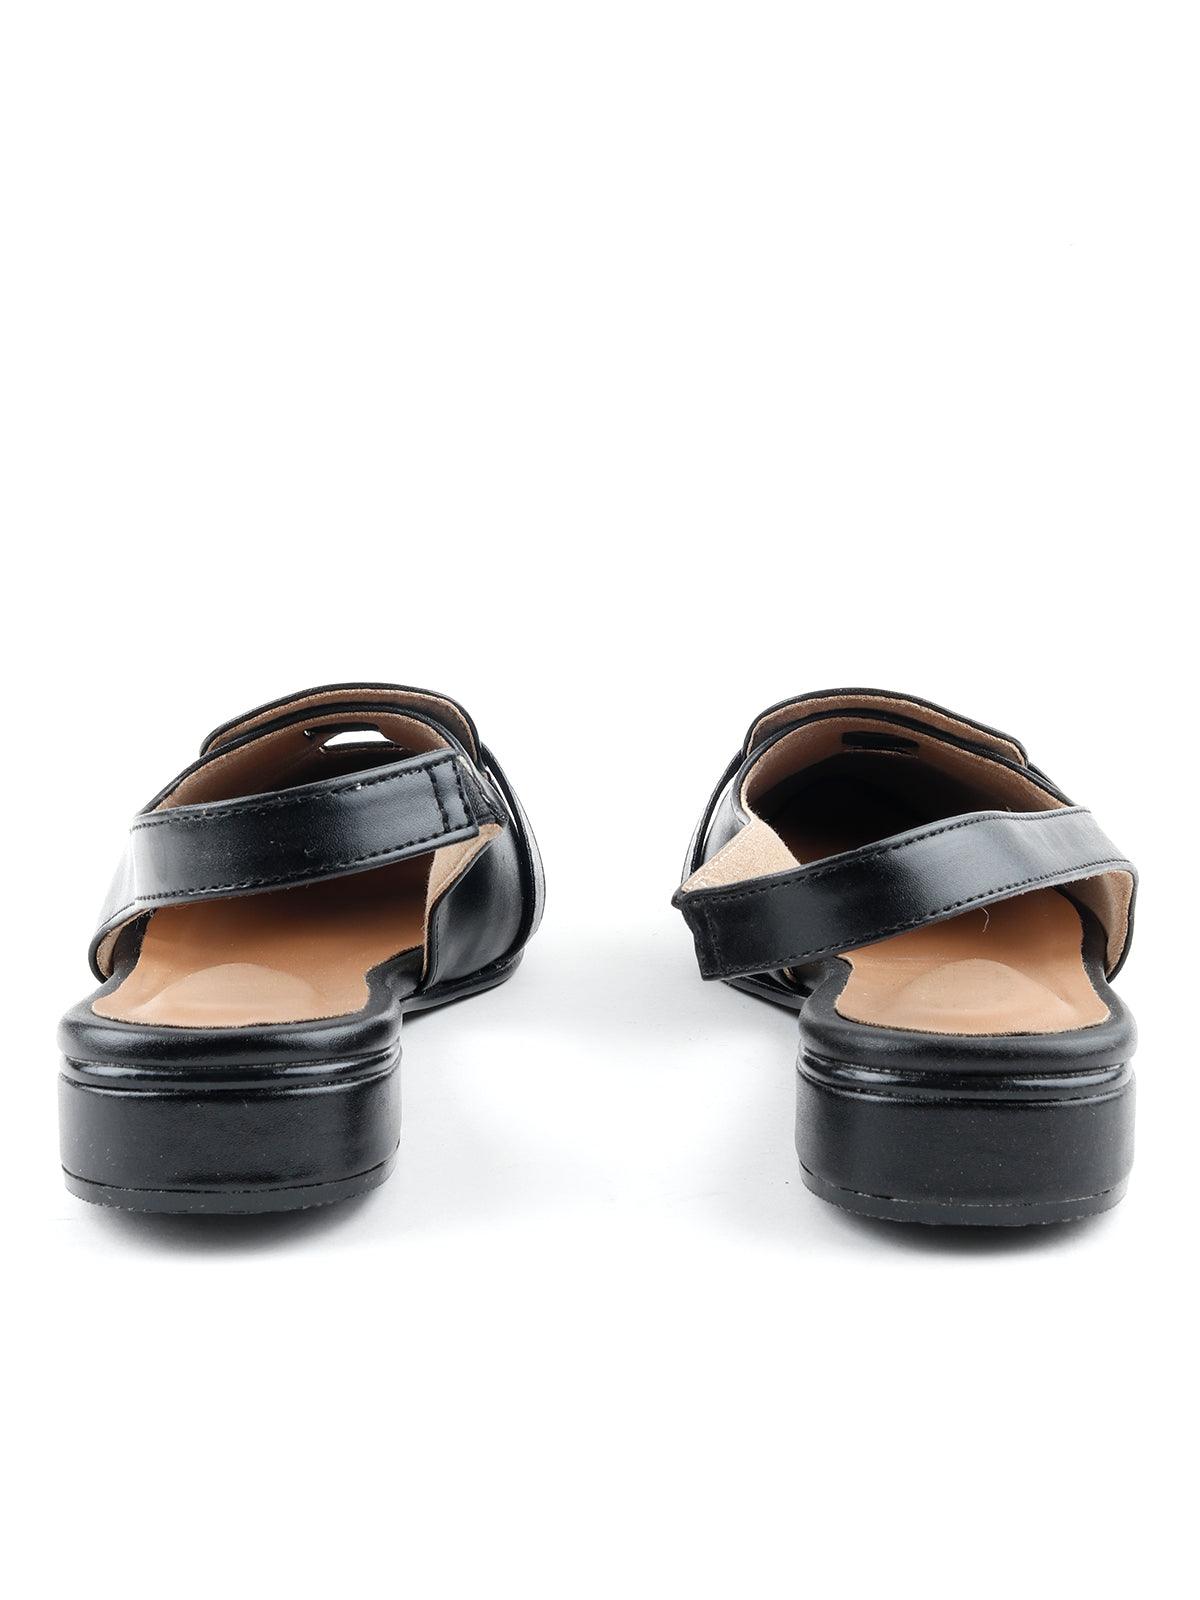 Odette Sophisticated Black Loafers - Odette